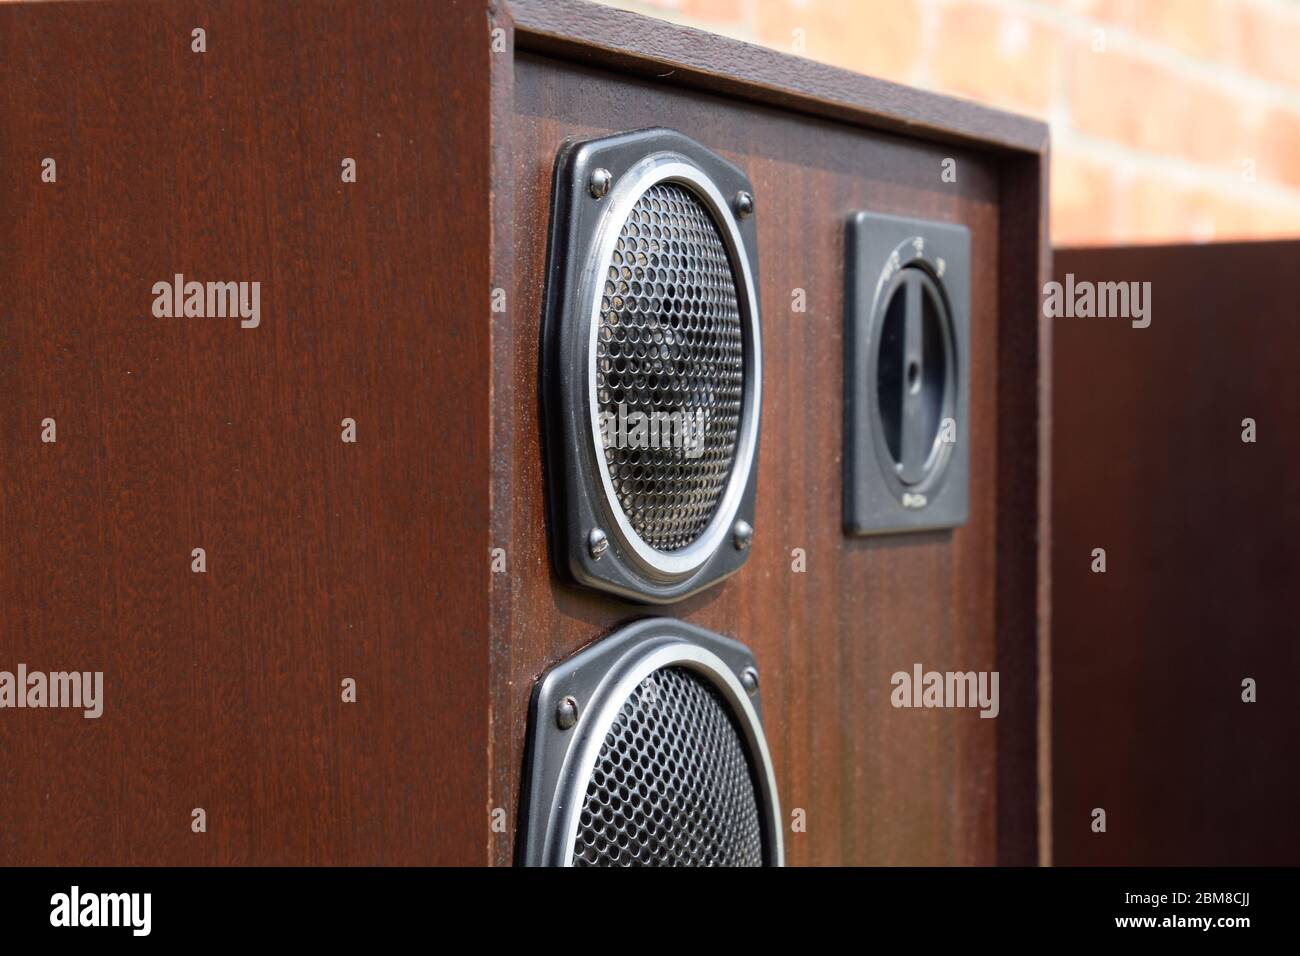 Akustikanlage Radiotehnica S90, 35 s-012. Sowjetische Vintage-Audio-Ausrüstung. Musiksäulen aus Sperrholz und Furnier wertvoller Holzarten. Stockfoto